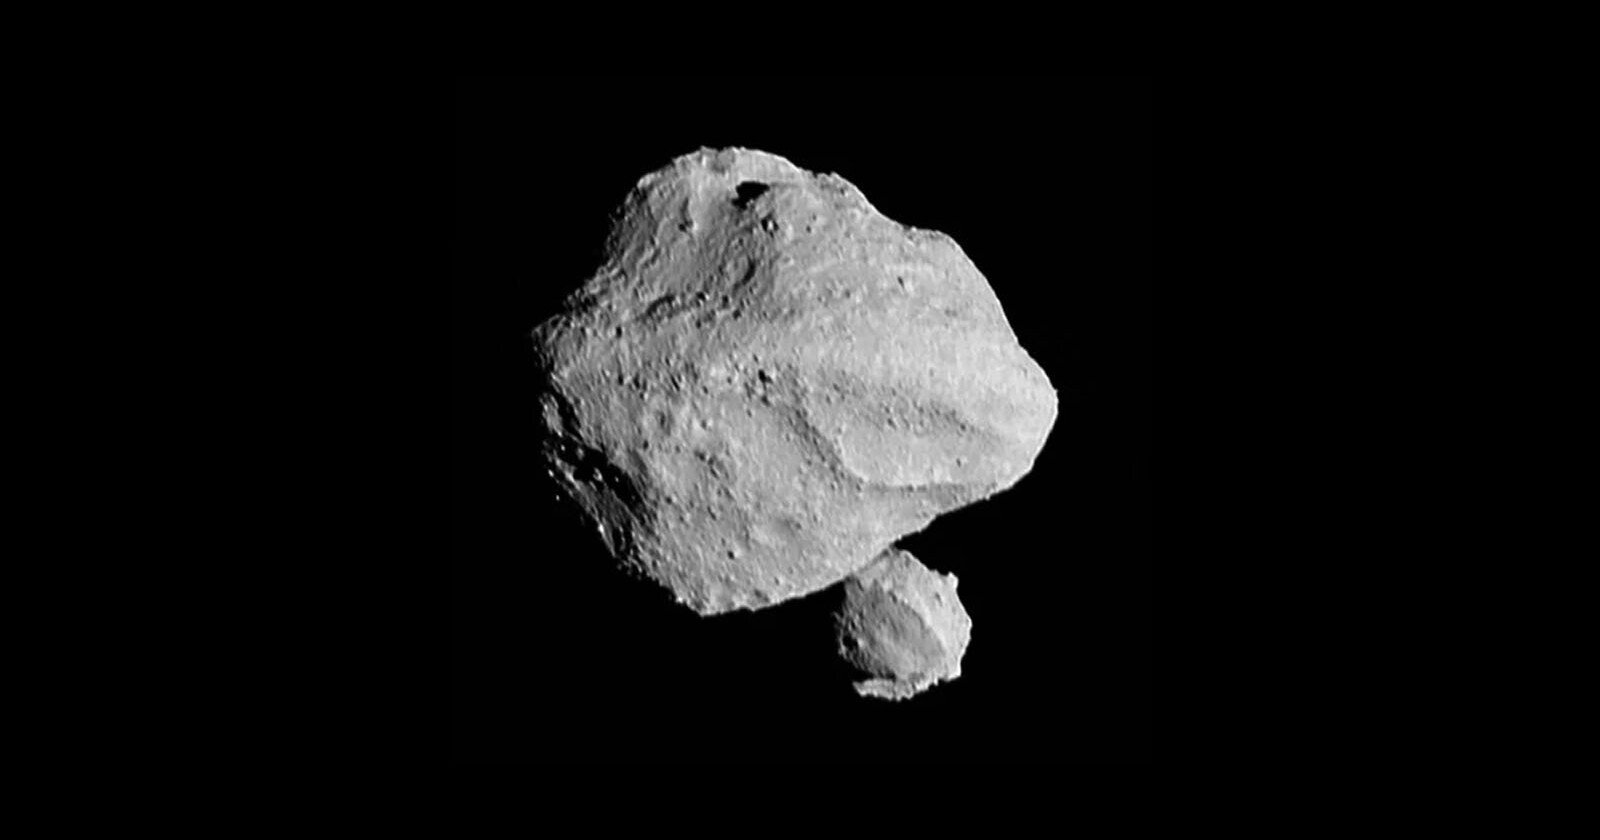  nasa spacecraft first photo asteroid reveals surprise 